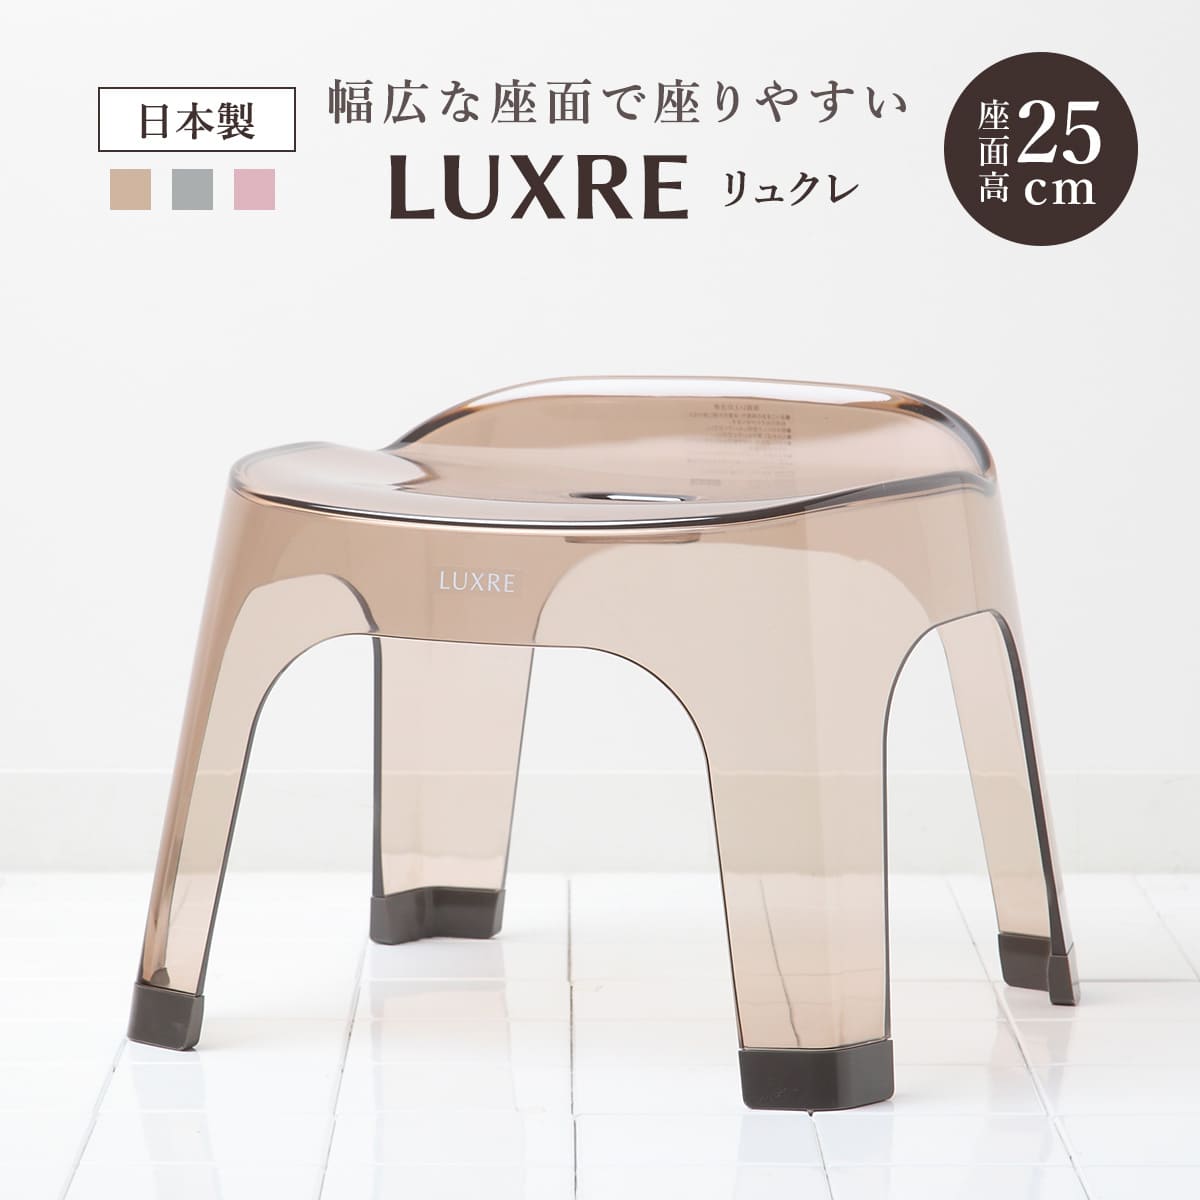 風呂椅子 25cm リュクレ LUXRE